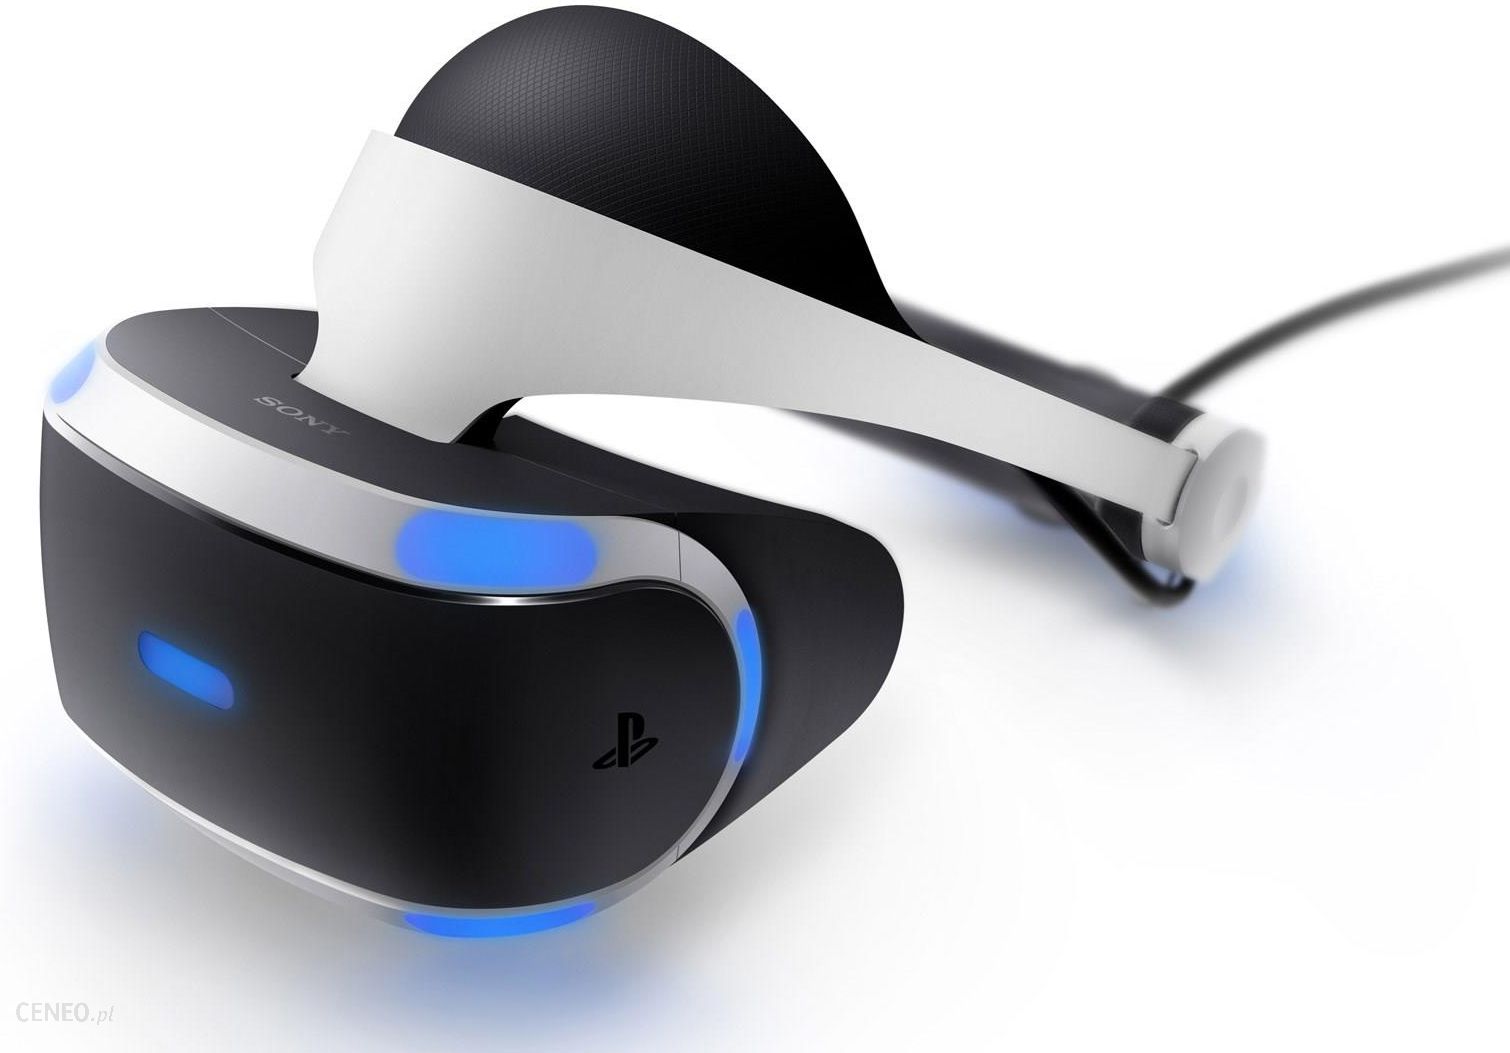 Sony PlayStation VR Mega Pack V3 + voucher 5 gier